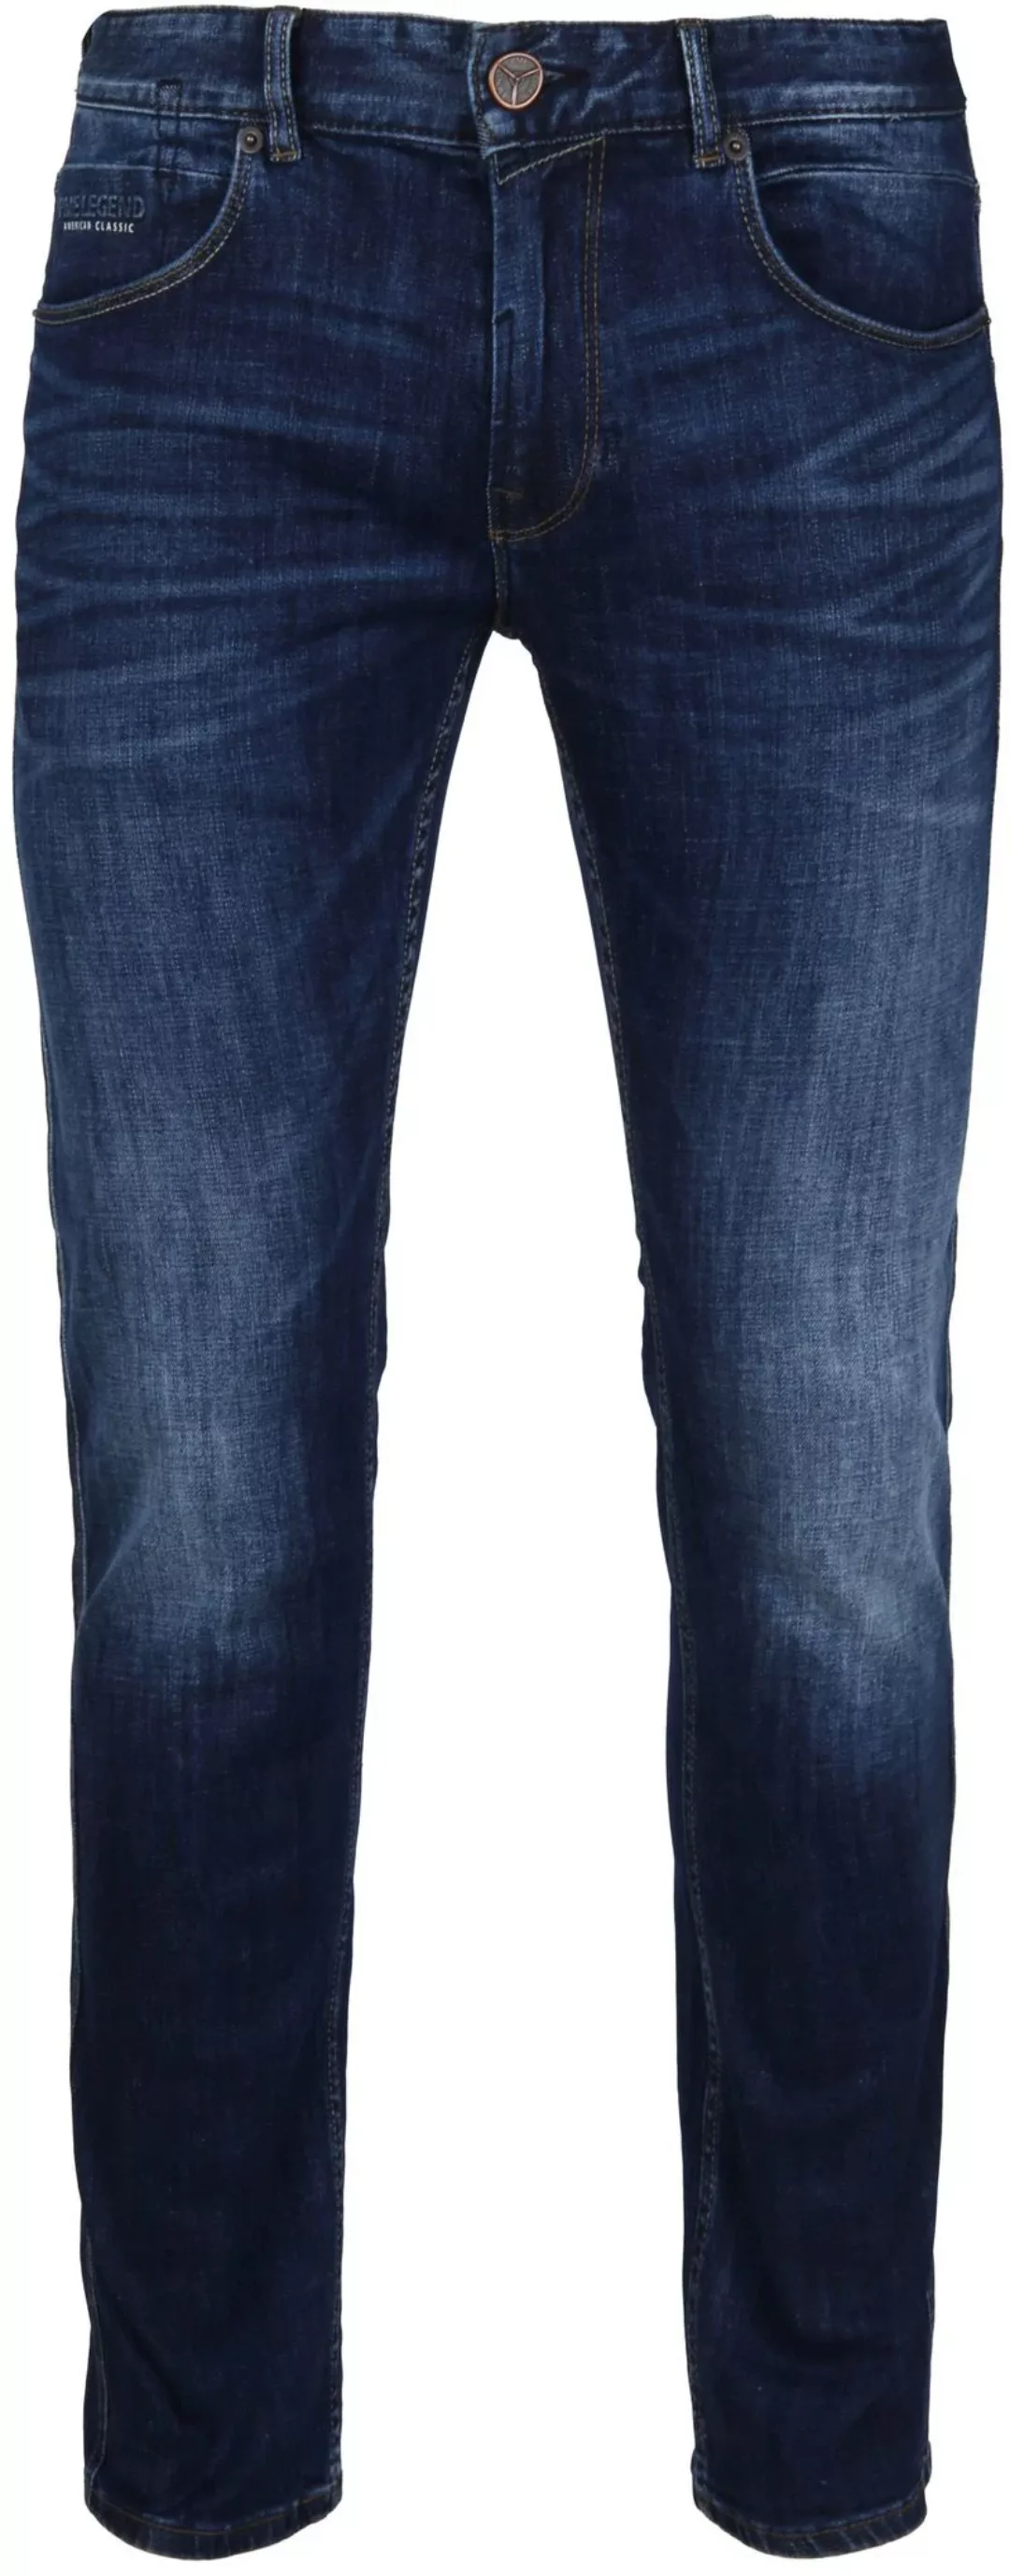 PME Legend Nightflight Jeans Dunkelblau - Größe W 34 - L 30 günstig online kaufen